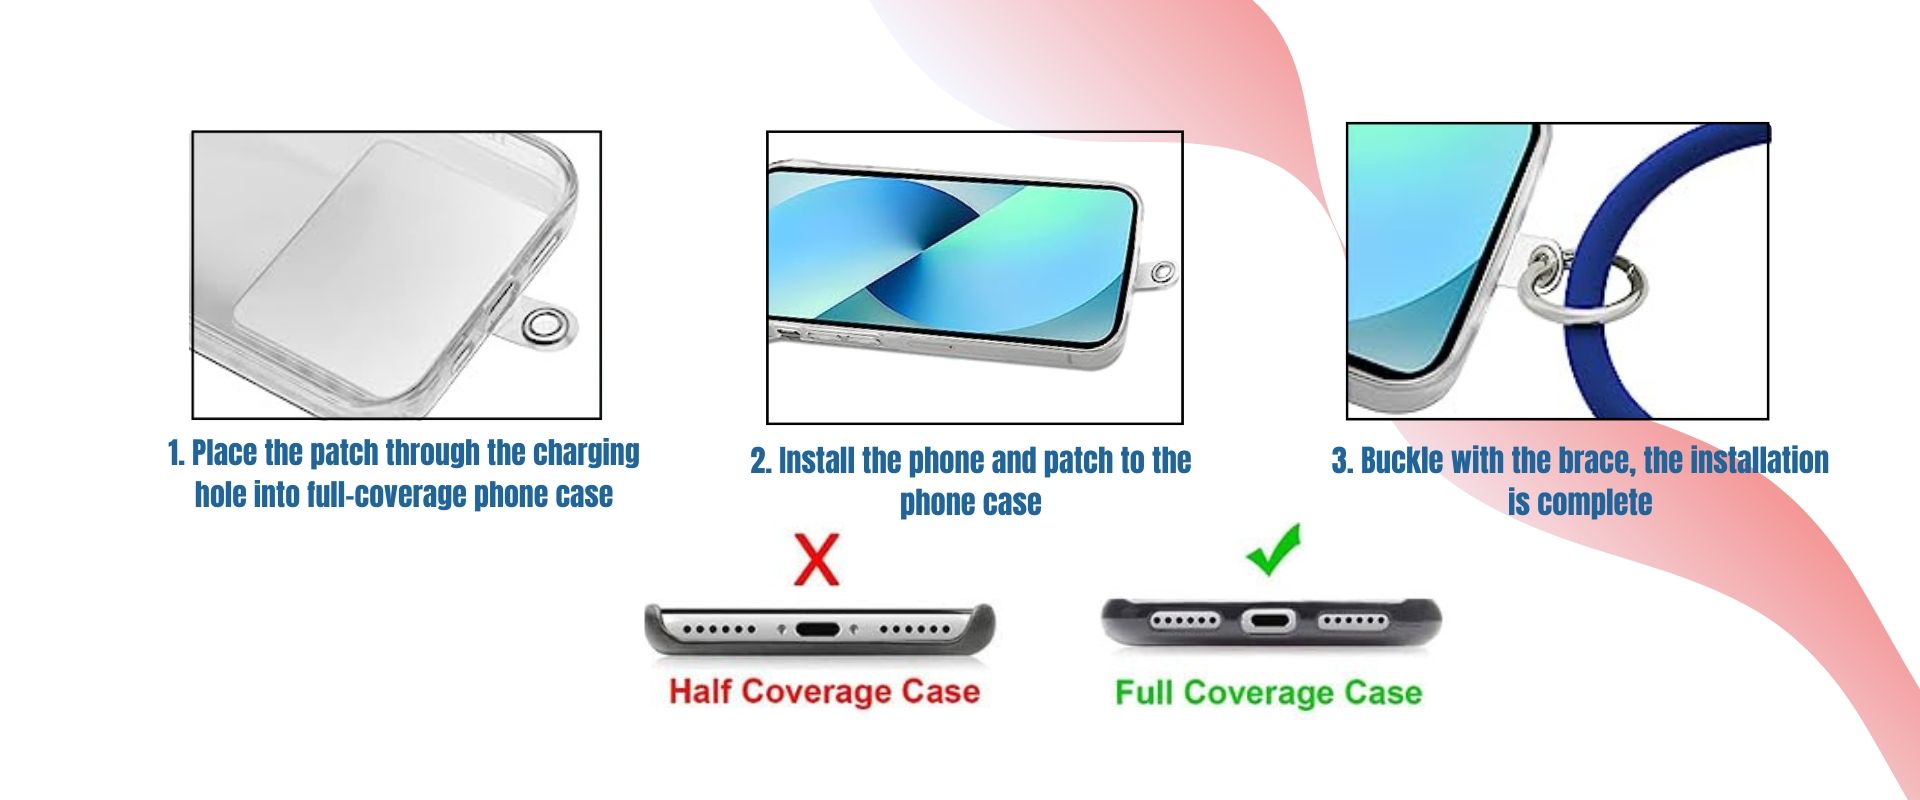 सिलिकॉन रिंग फोन लेनयार्ड कस्टम आकार हो सकता है।